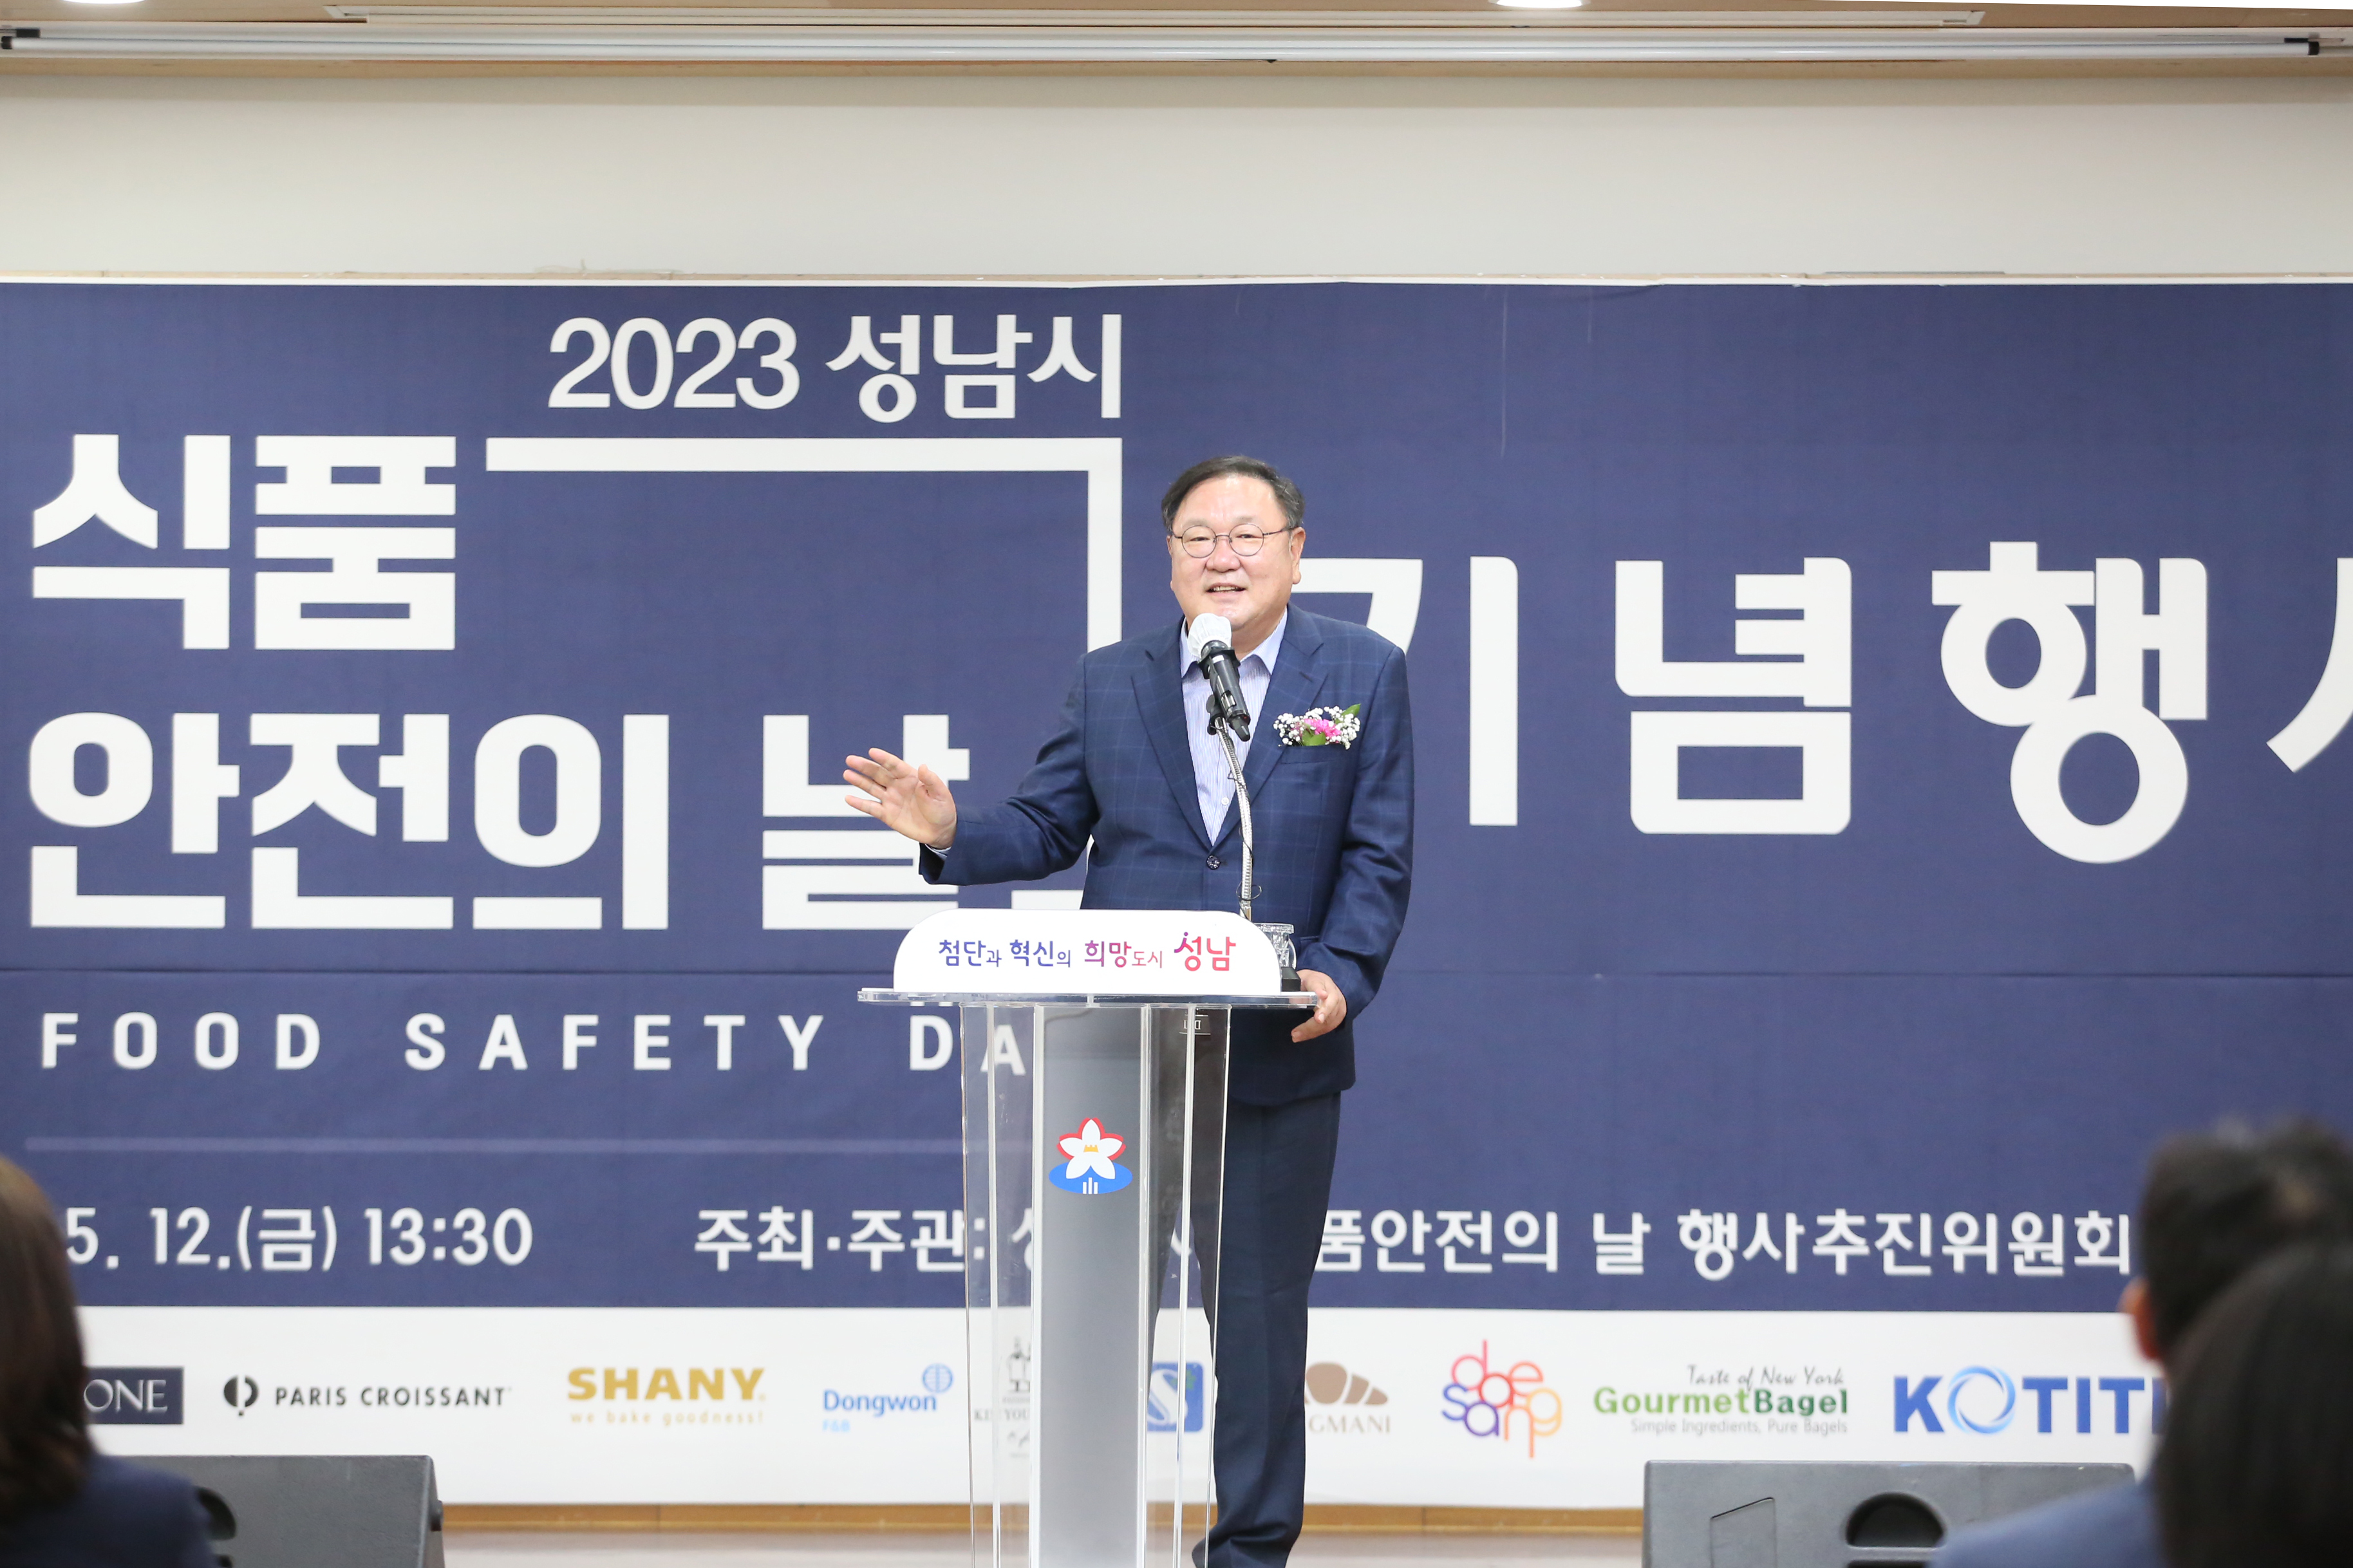 2023-05-12 성남시식품안전의날 기념행사 - 11